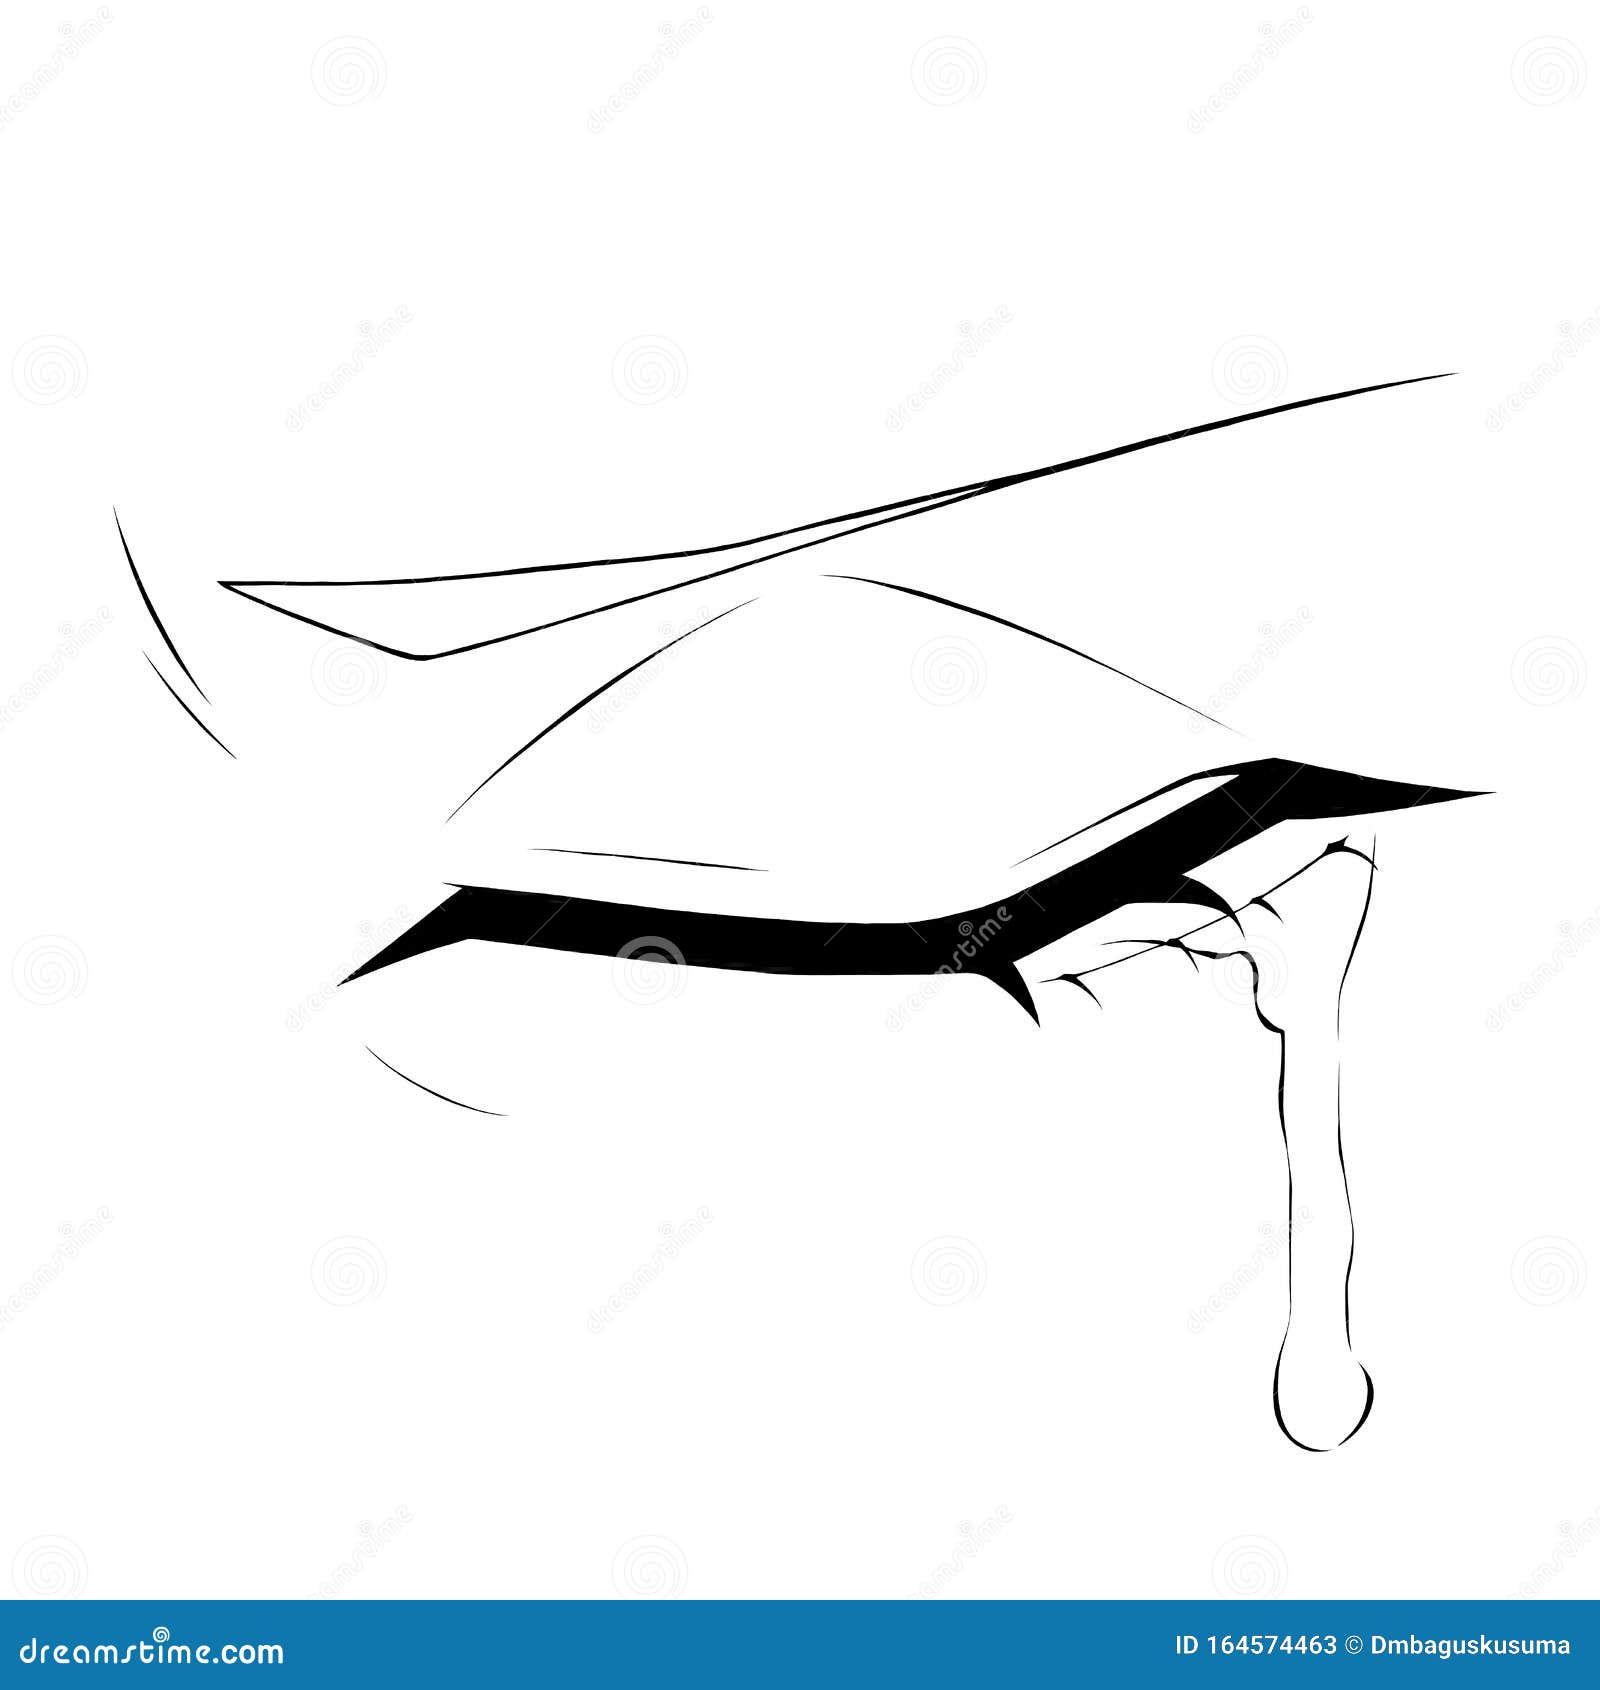 Anime Crying Eye stock illustration. Illustration of anime - 164574463